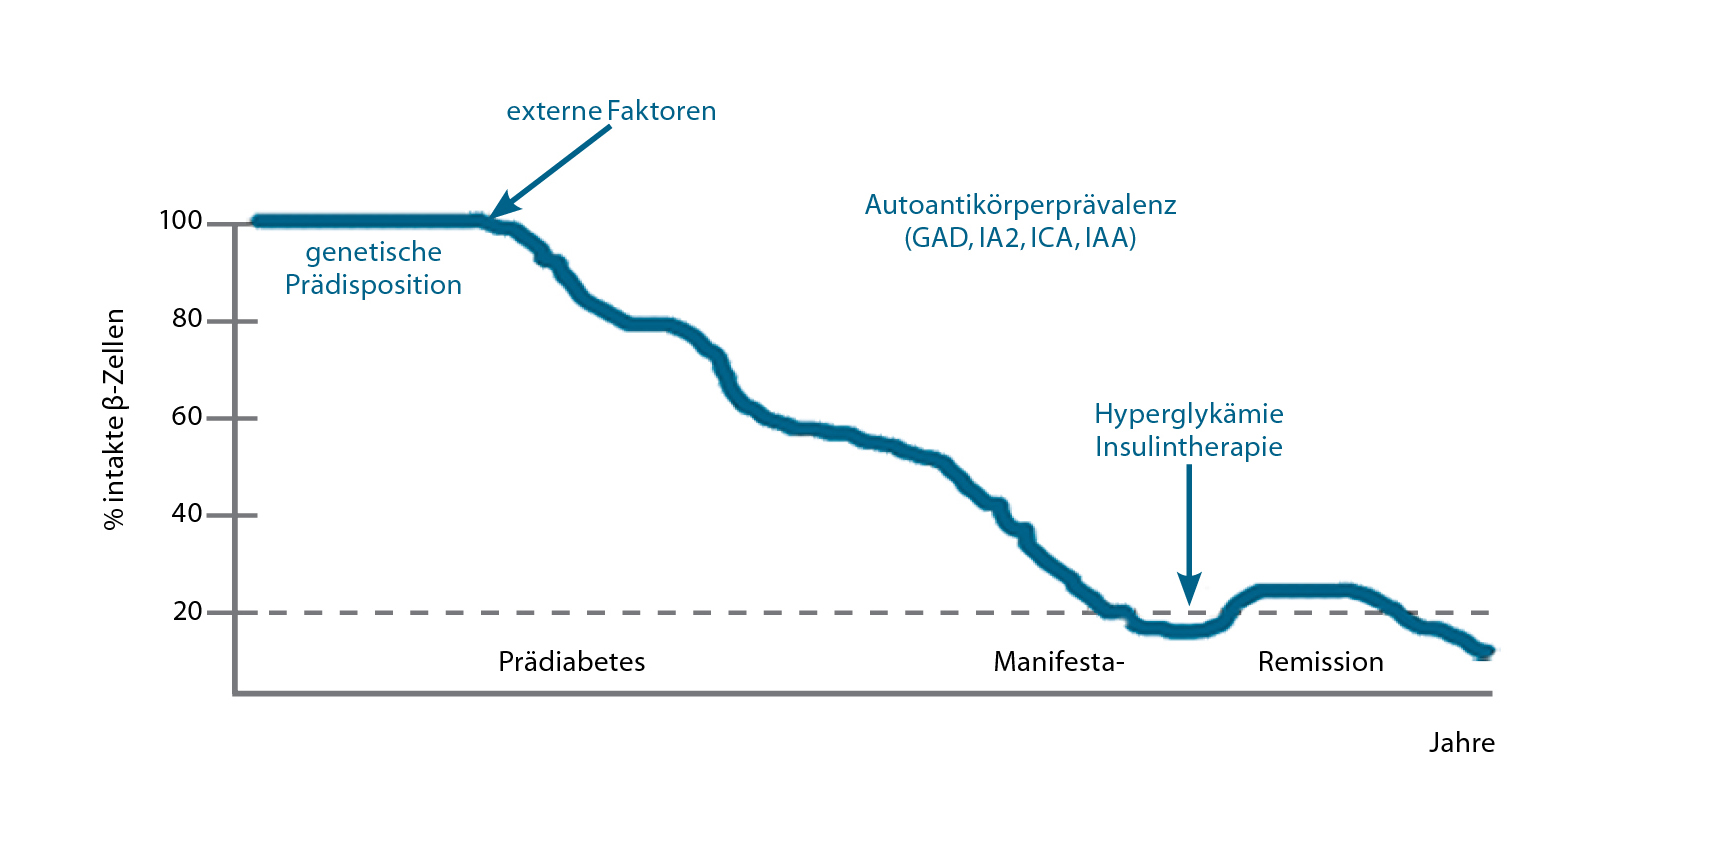 diabetes remission type 1 a cukorbetegség bemutatásának modern módszerei